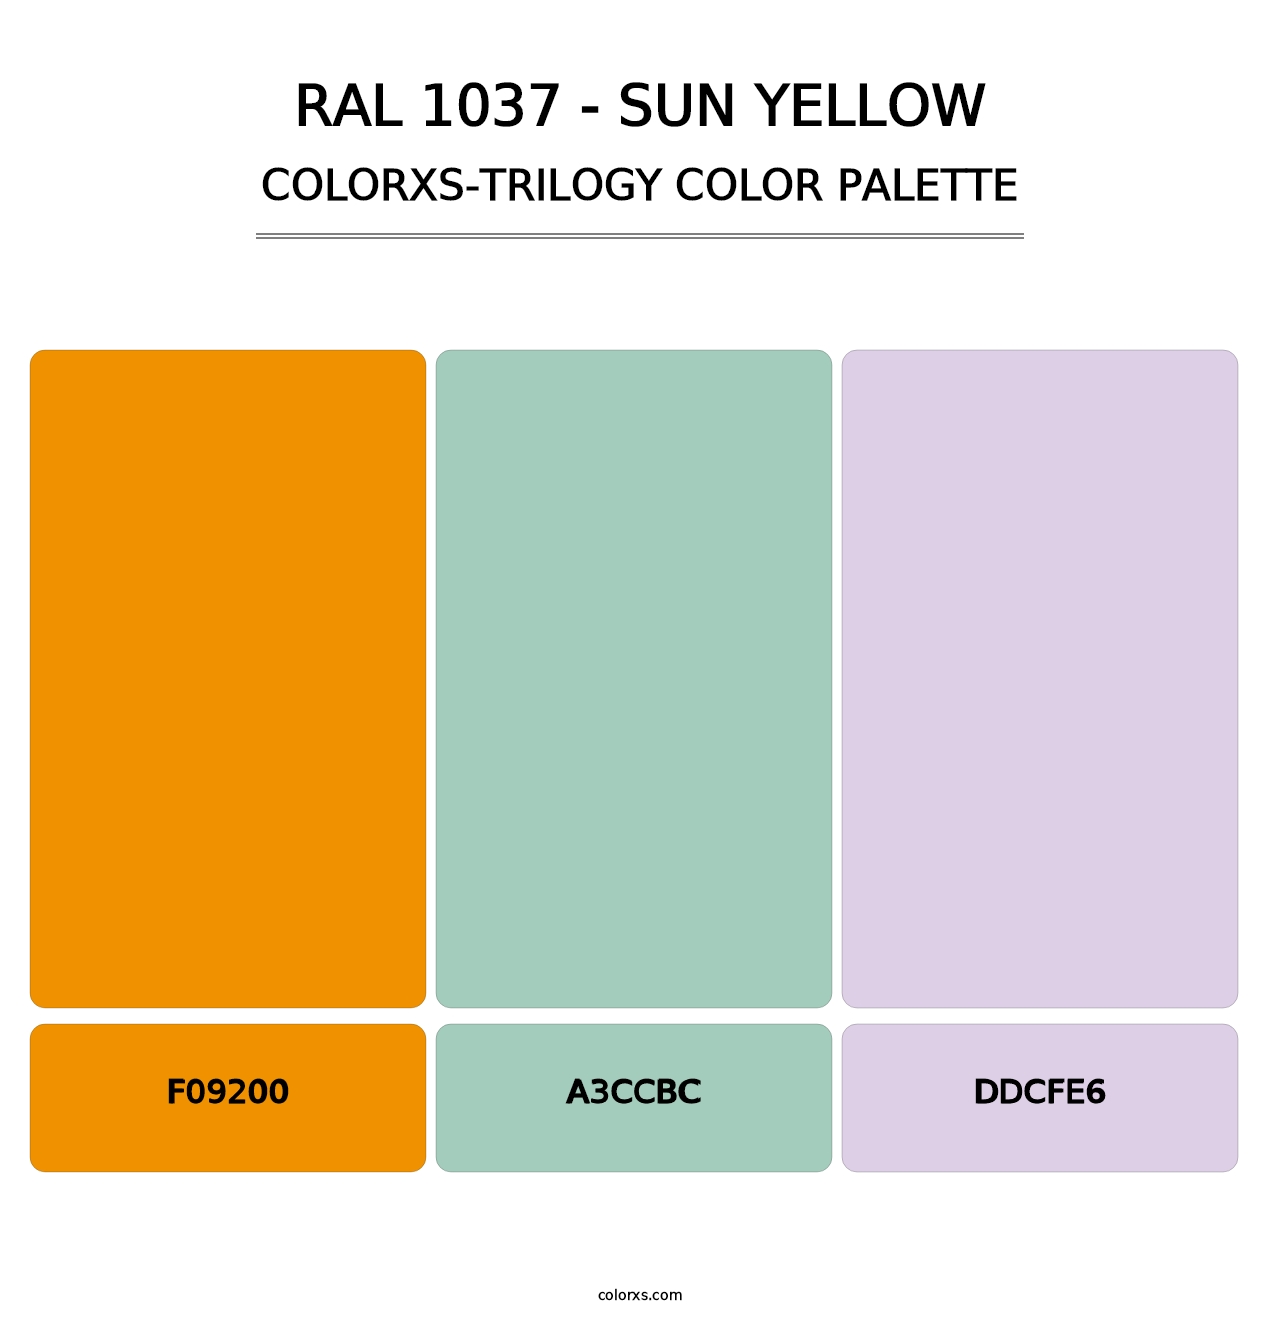 RAL 1037 - Sun Yellow - Colorxs Trilogy Palette